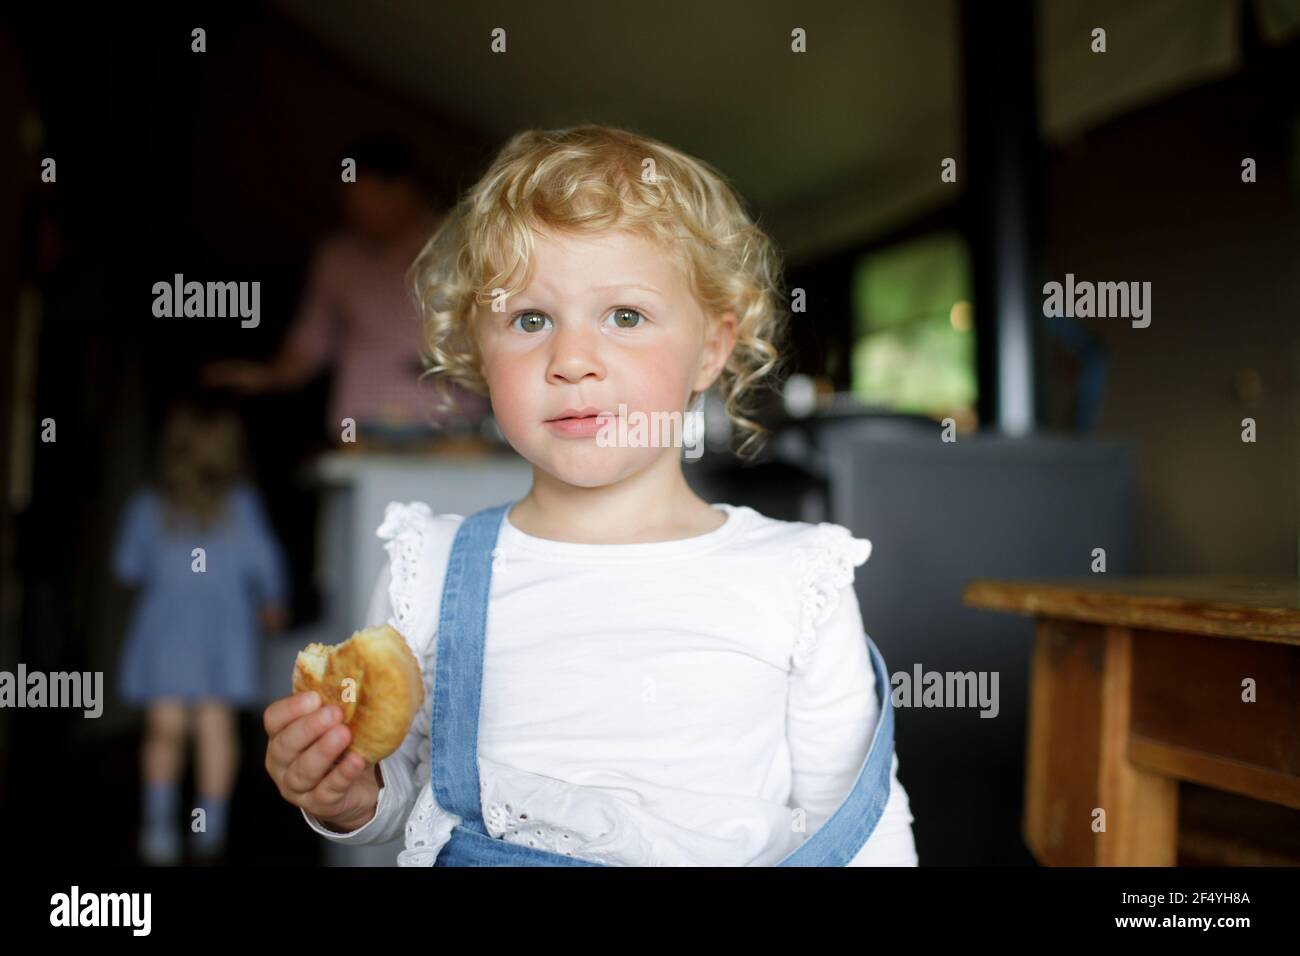 Portrait nettes Mädchen mit lockigen blonden Haaren essen Keks an Zu Hause Stockfoto